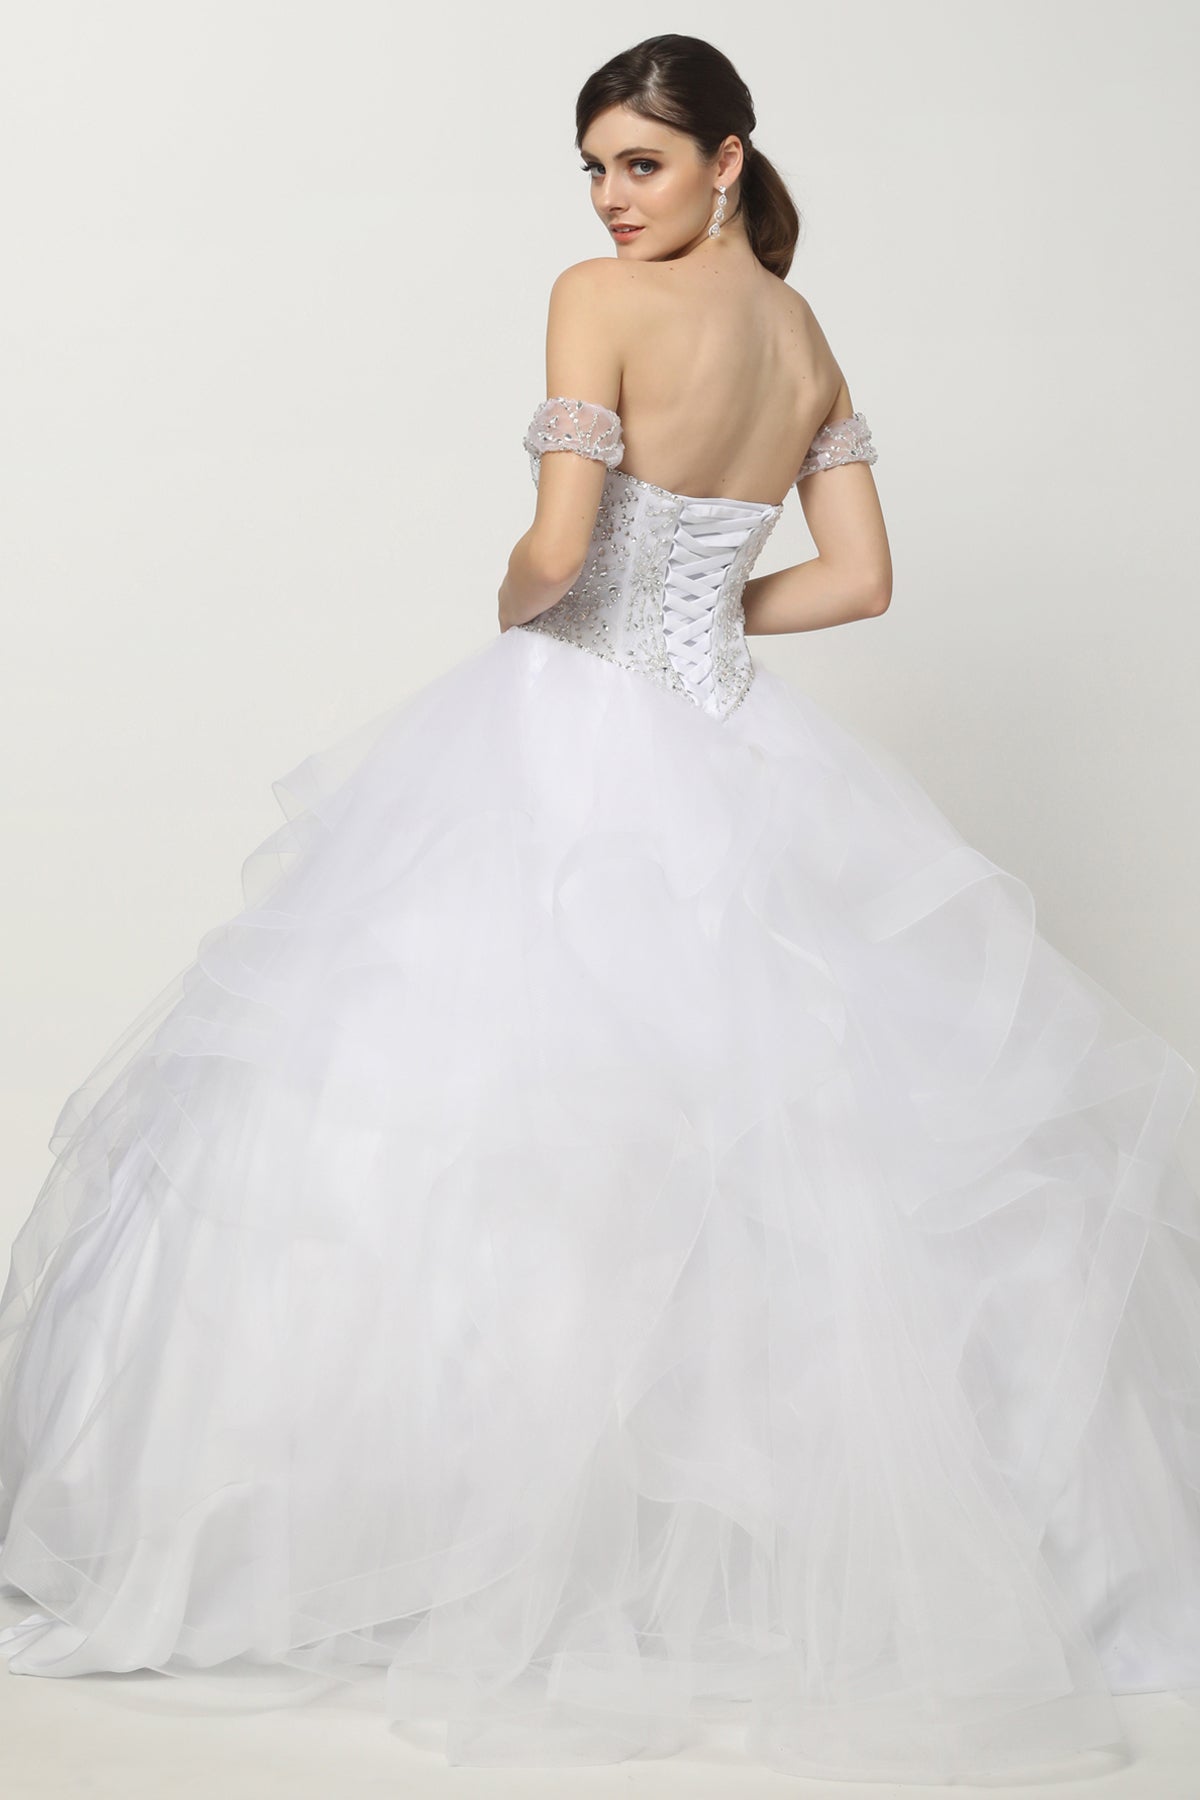 Promo Dress JT1425W Elsy Style Wedding Dress